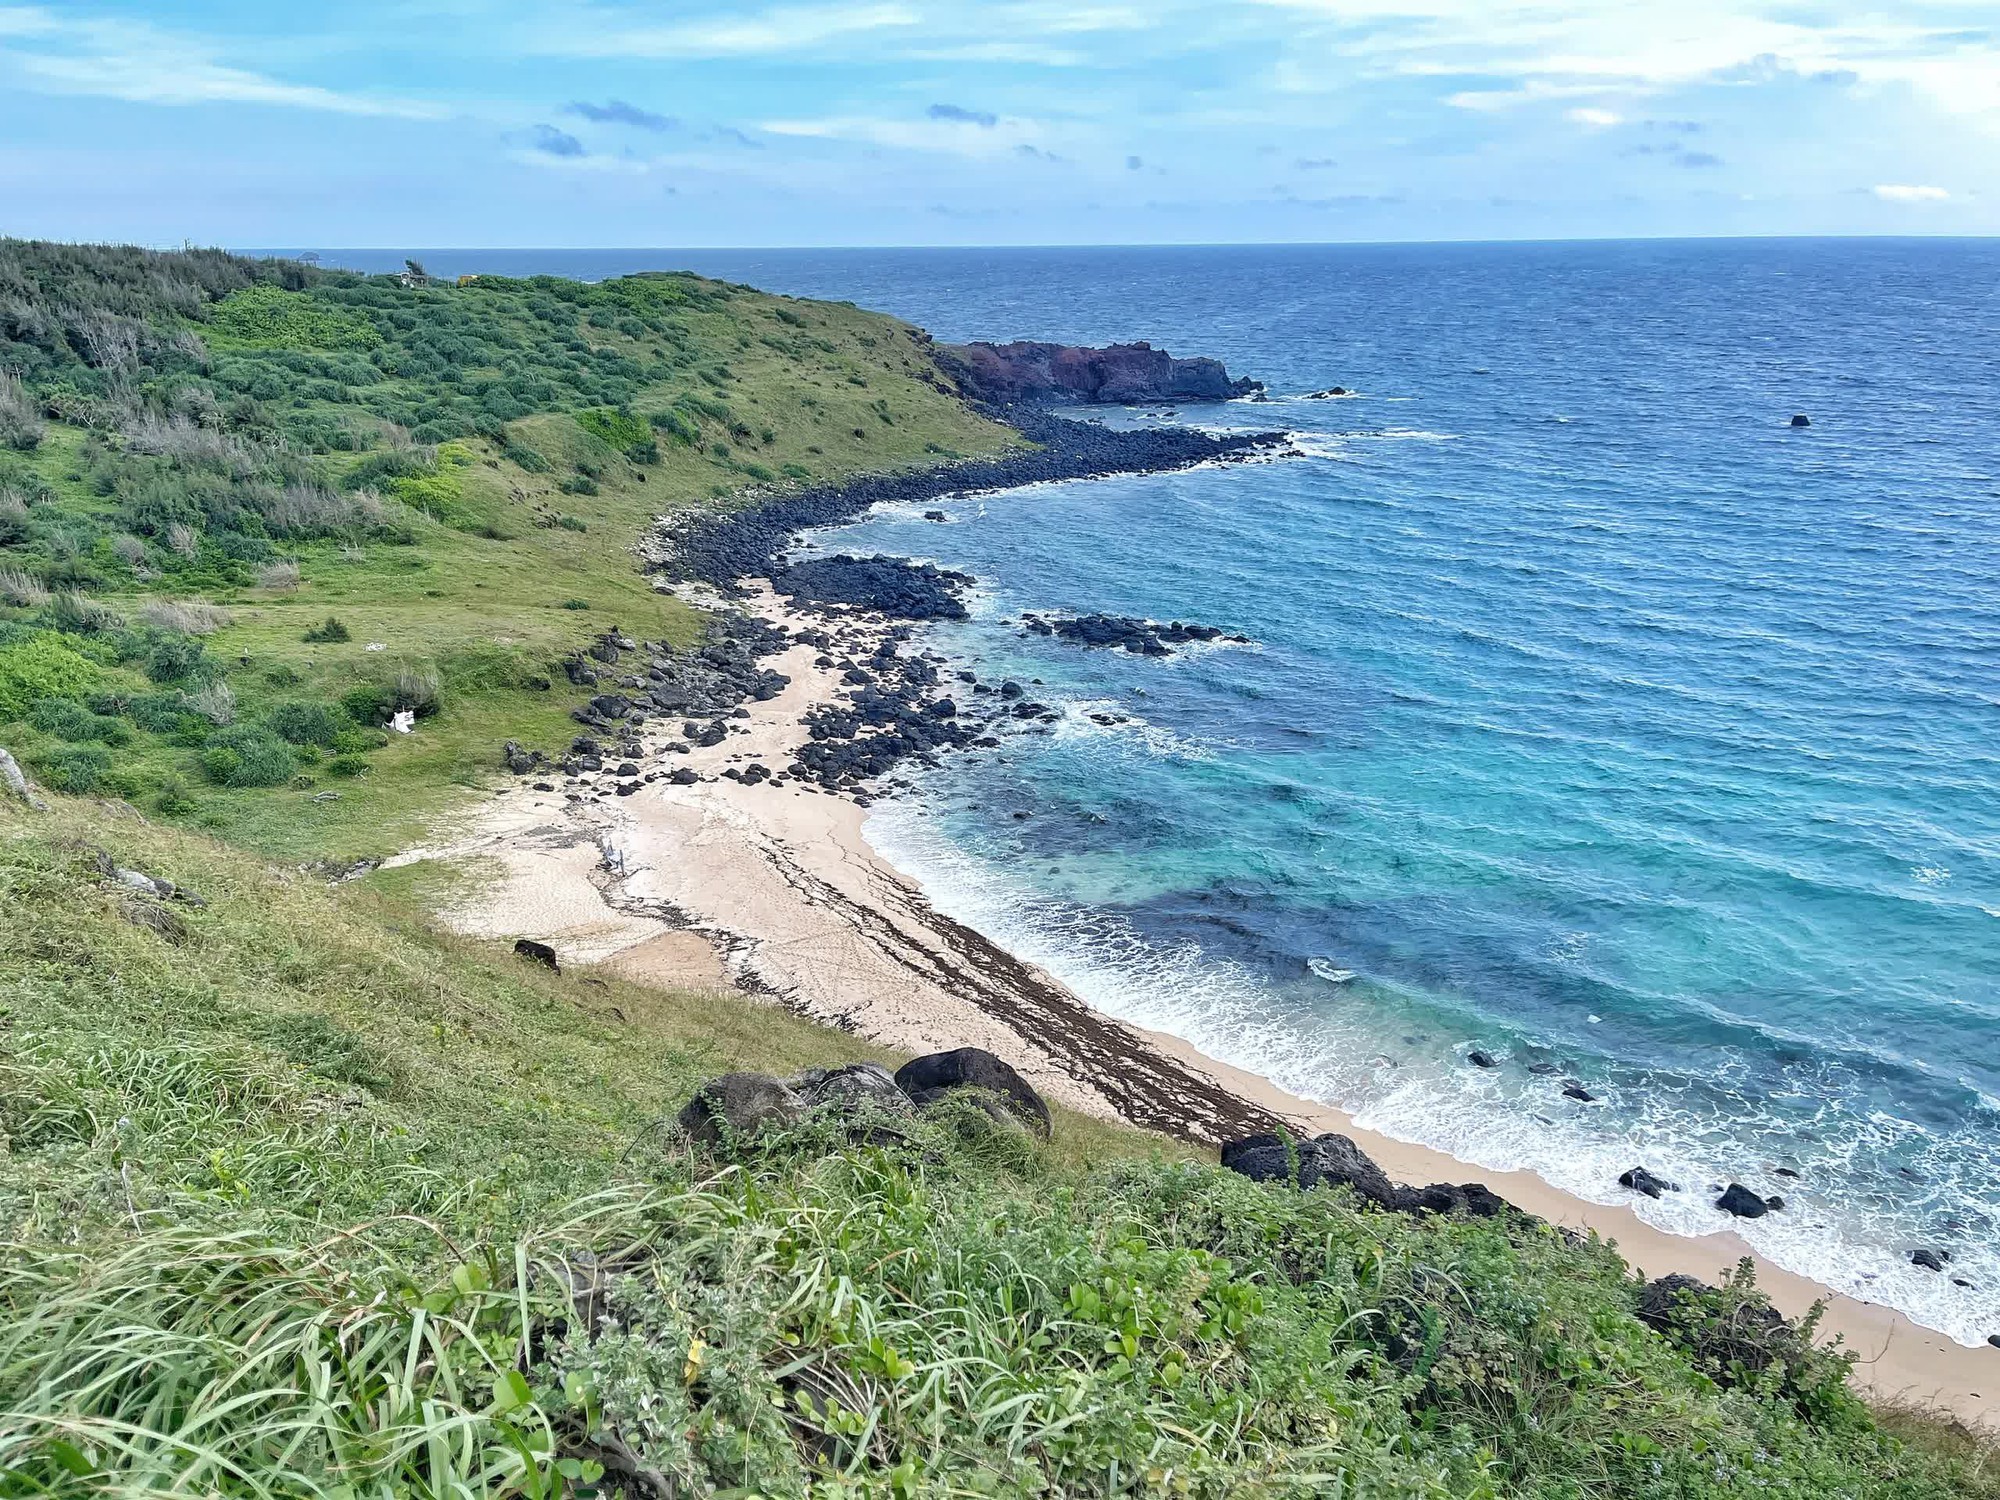 Đảo Phú Quý bắt đầu vào mùa biển xanh nắng vàng, chỉ cần đứng vào là có ảnh đẹp- Ảnh 2.